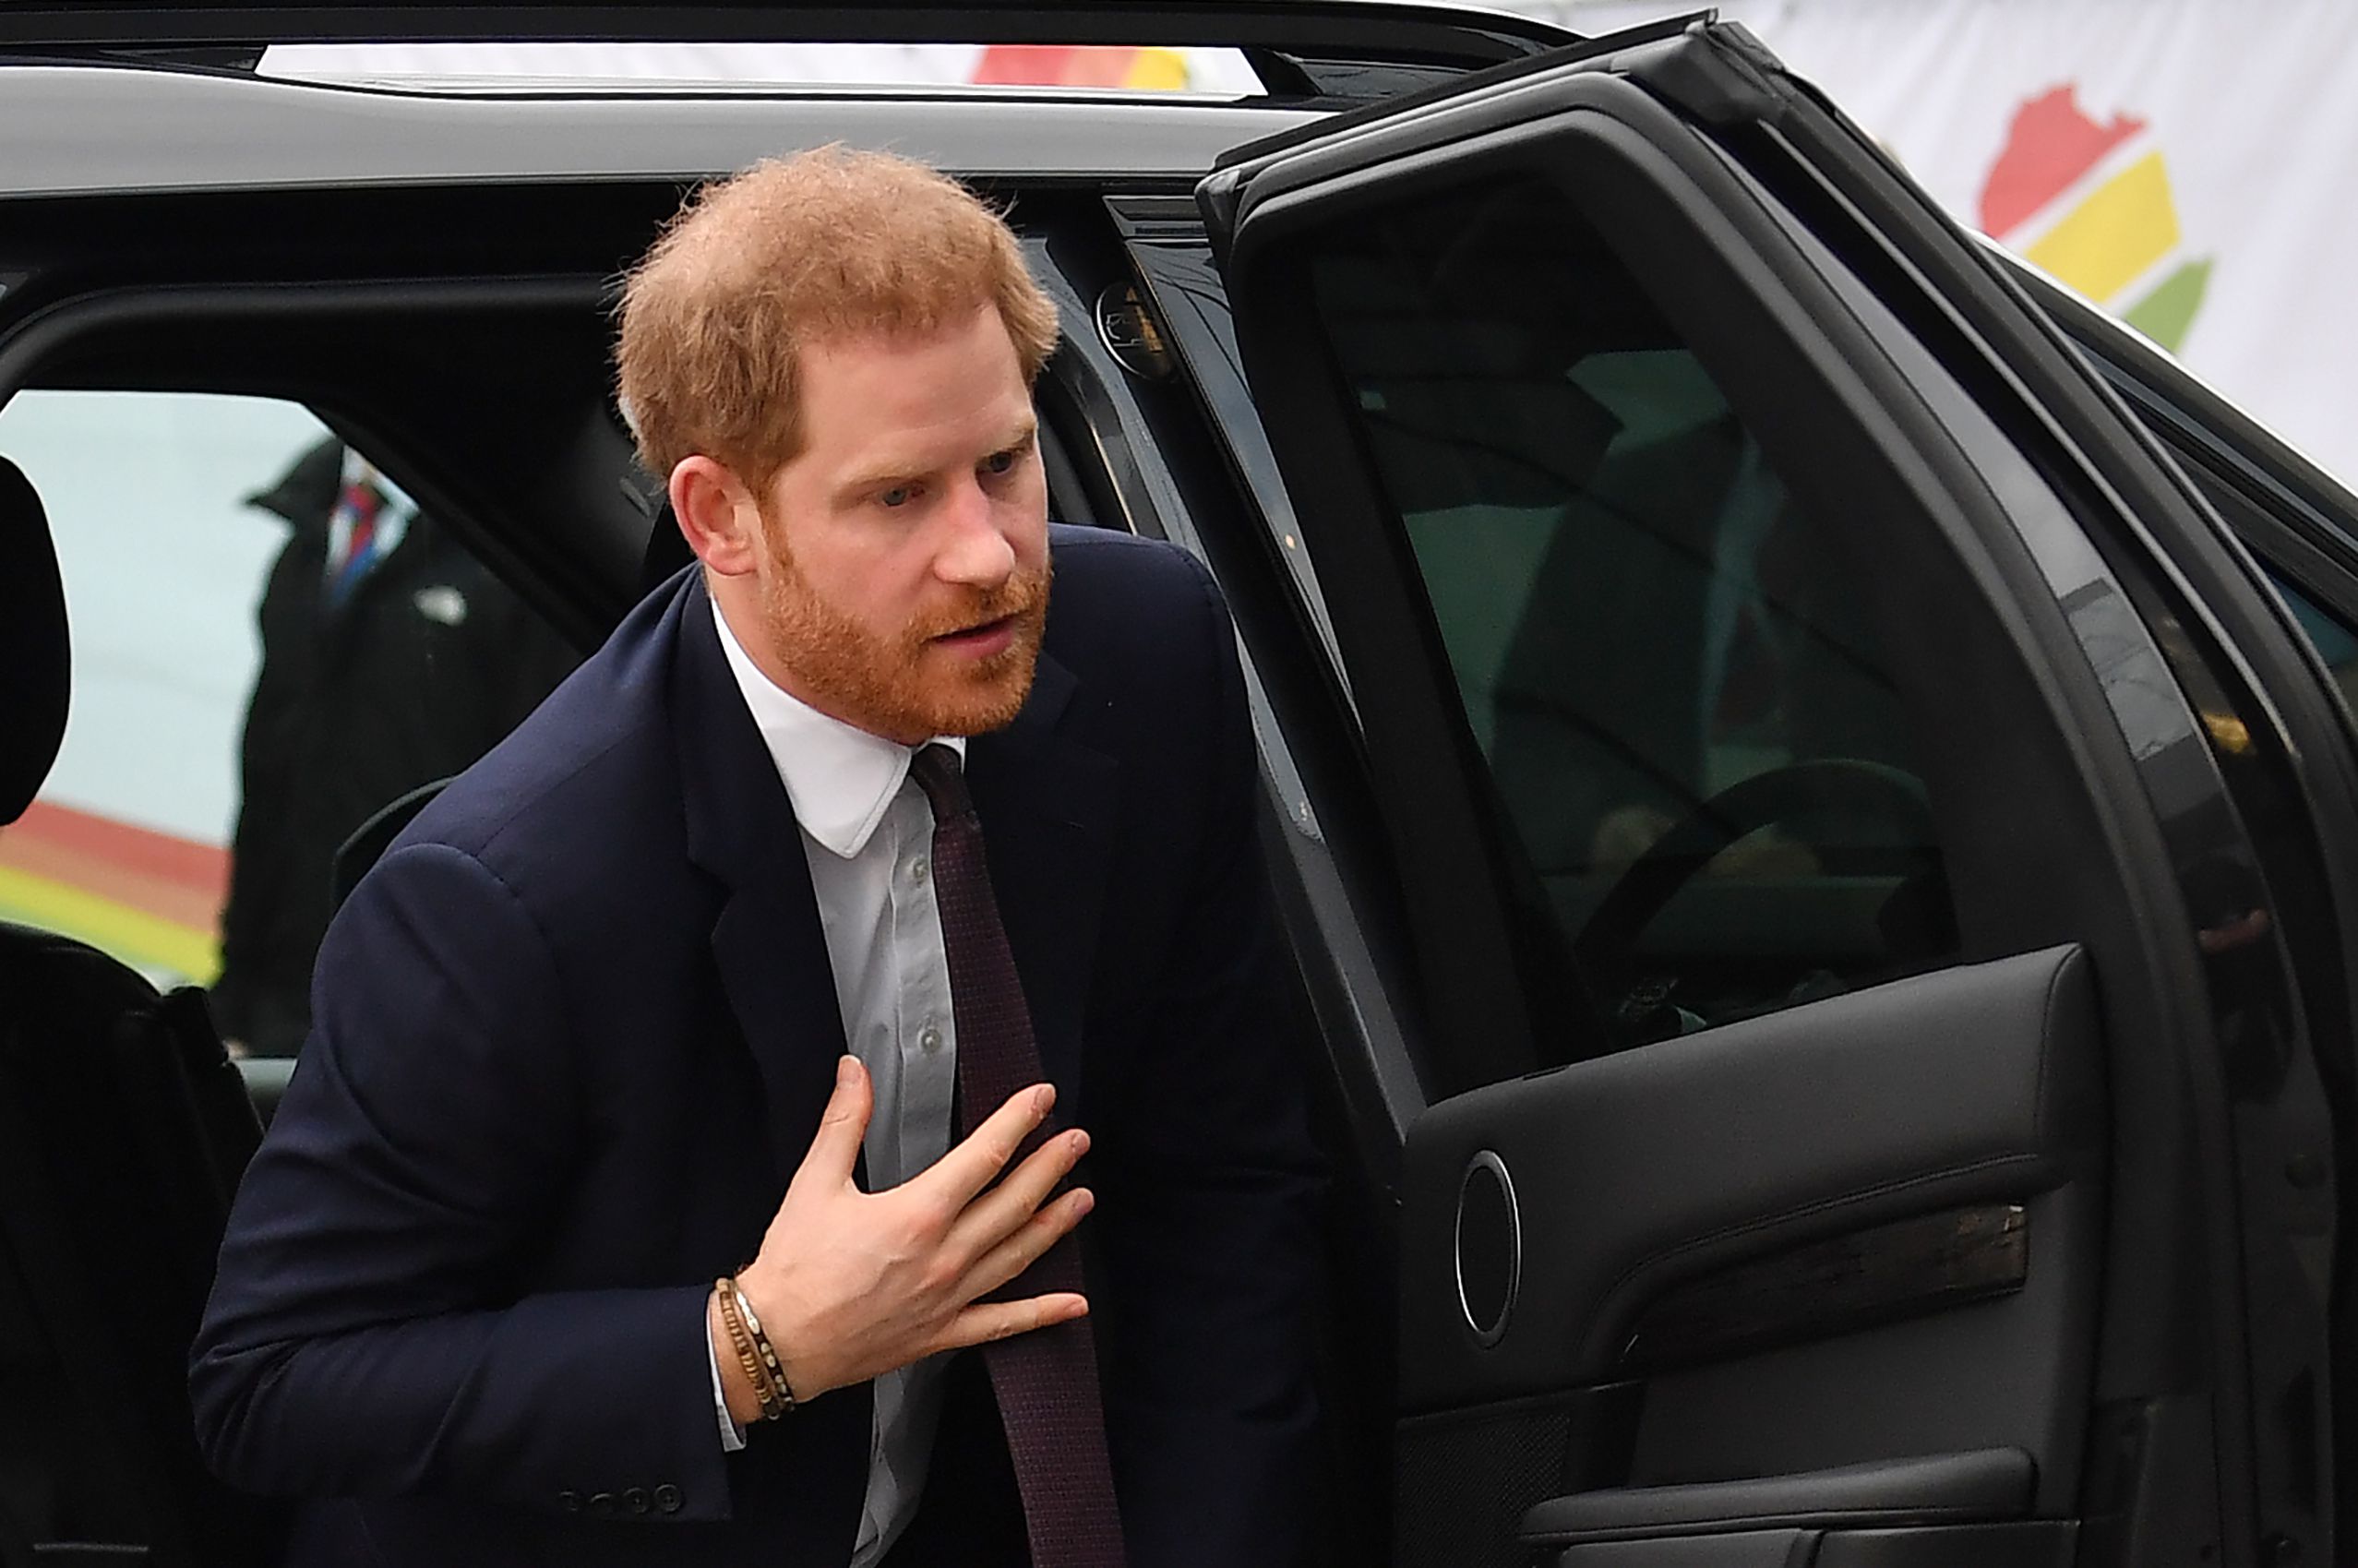 El príncipe Harry en su llegada a la cumbre de inversión Reino Unido-Africa en Londres (Ben STANSALL / AFP)